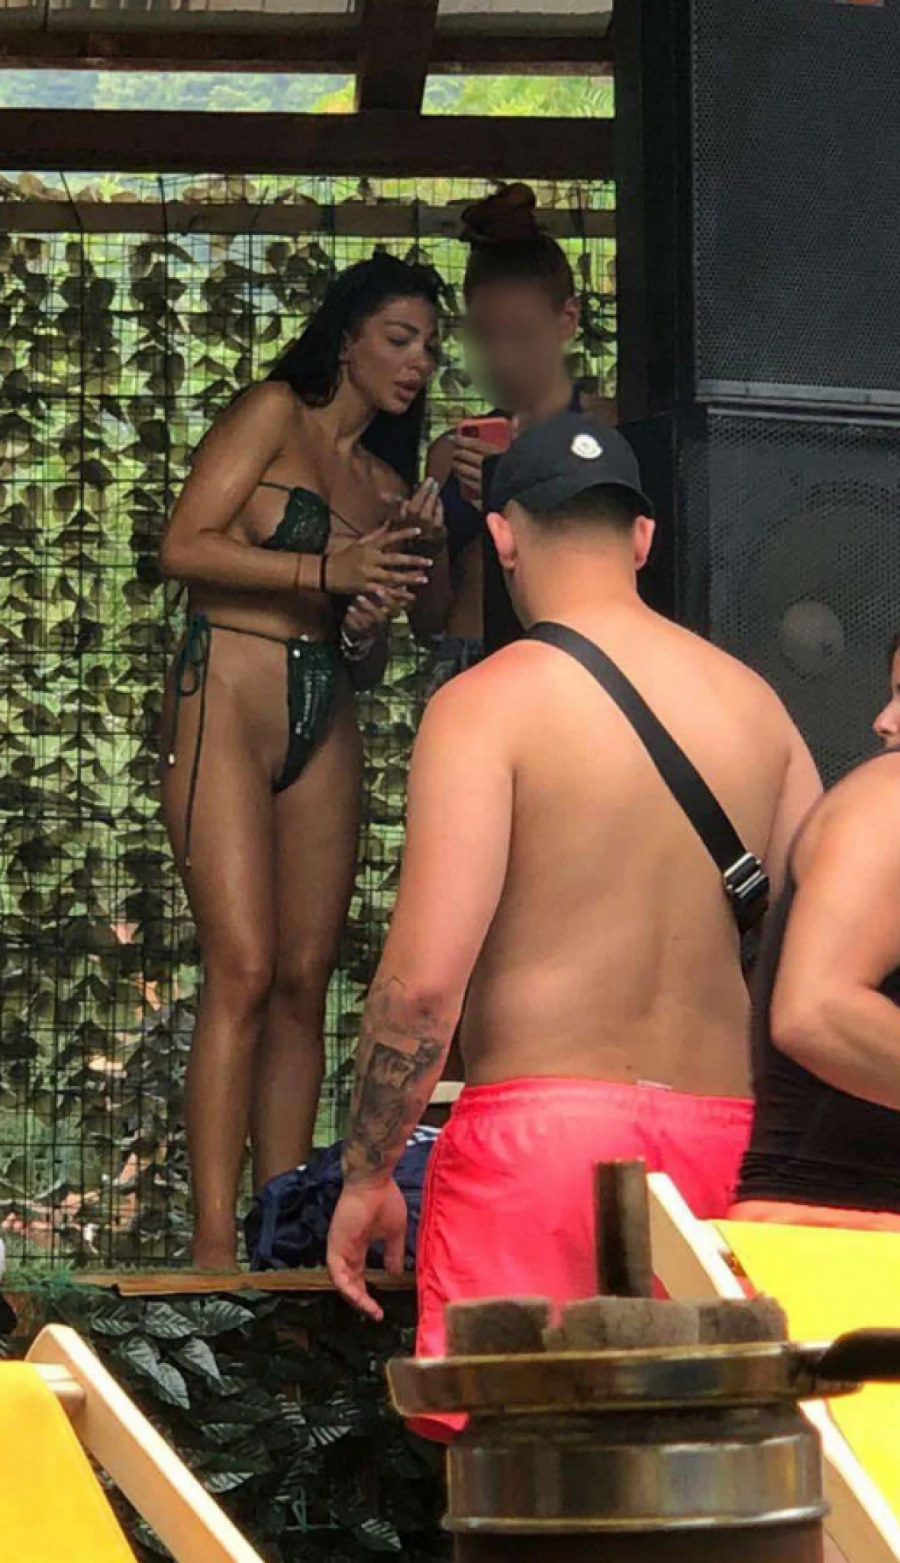 MAJO, ŠTA TI JE TO ISPALO?! Marinkovićka na plaži sa novim dečkom, a kad joj se kupaći pomerio sve joj izvirelo! (PAPARACO FOTOGRAFIJE)